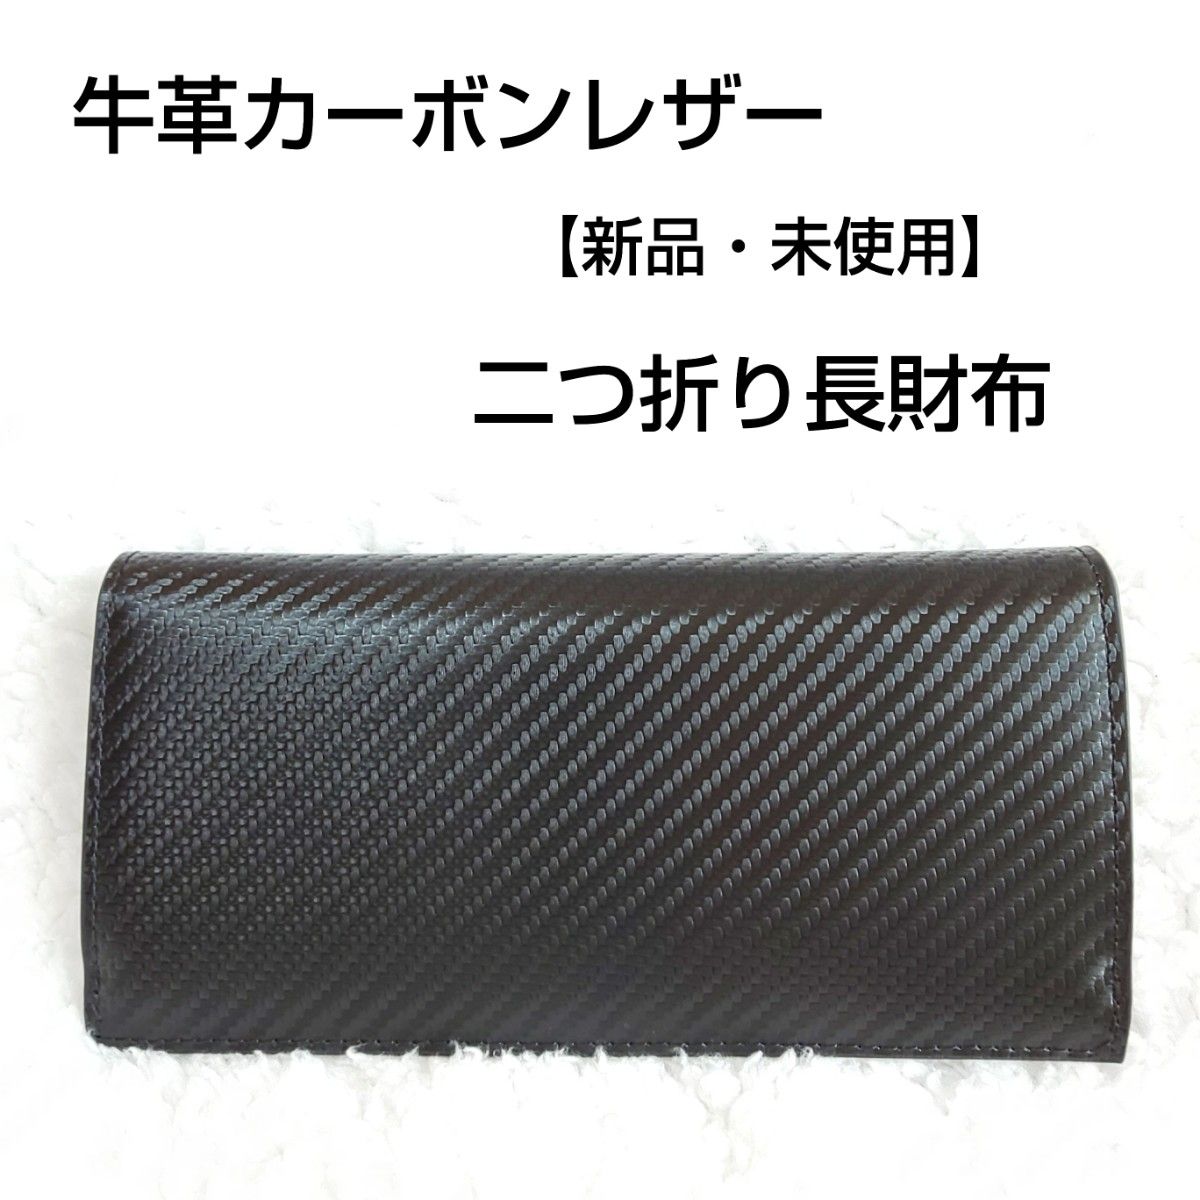 【新品・未使用】ハンドメイド カーボンレザー 二つ折り財布  牛革 レザー長財布